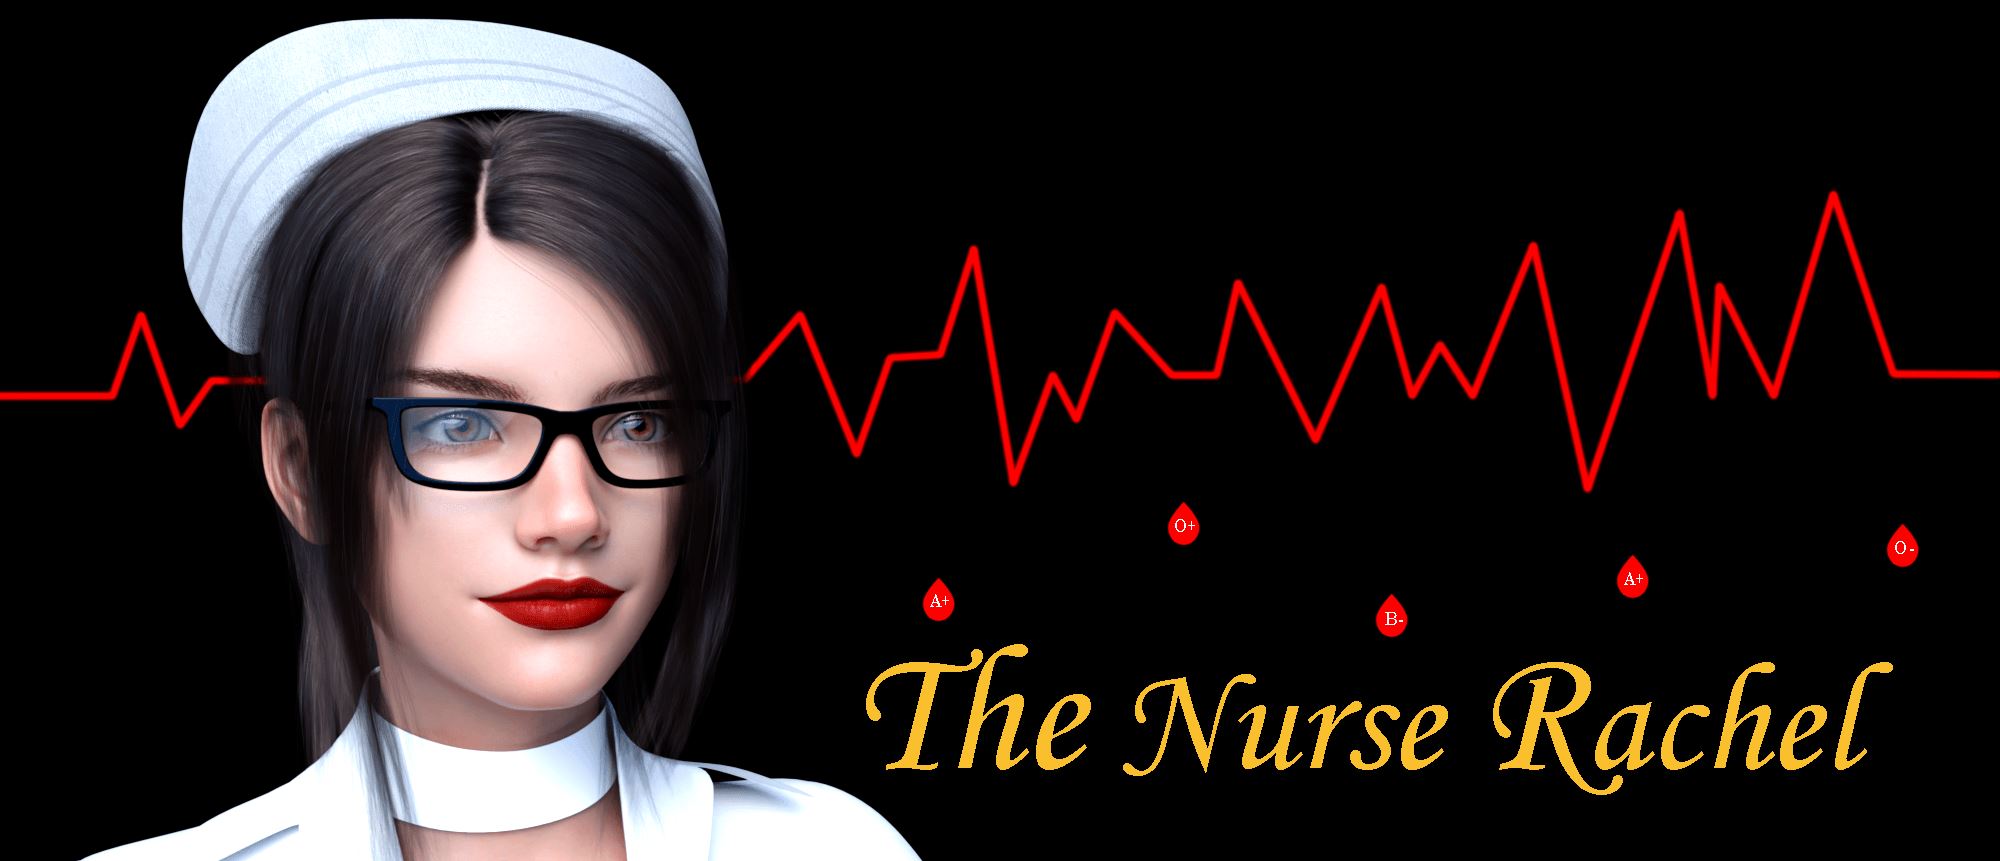 2000px x 861px - The Nurse Rachel Ren'Py Porn Sex Game v.Ch. 2 Download for Windows, Linux